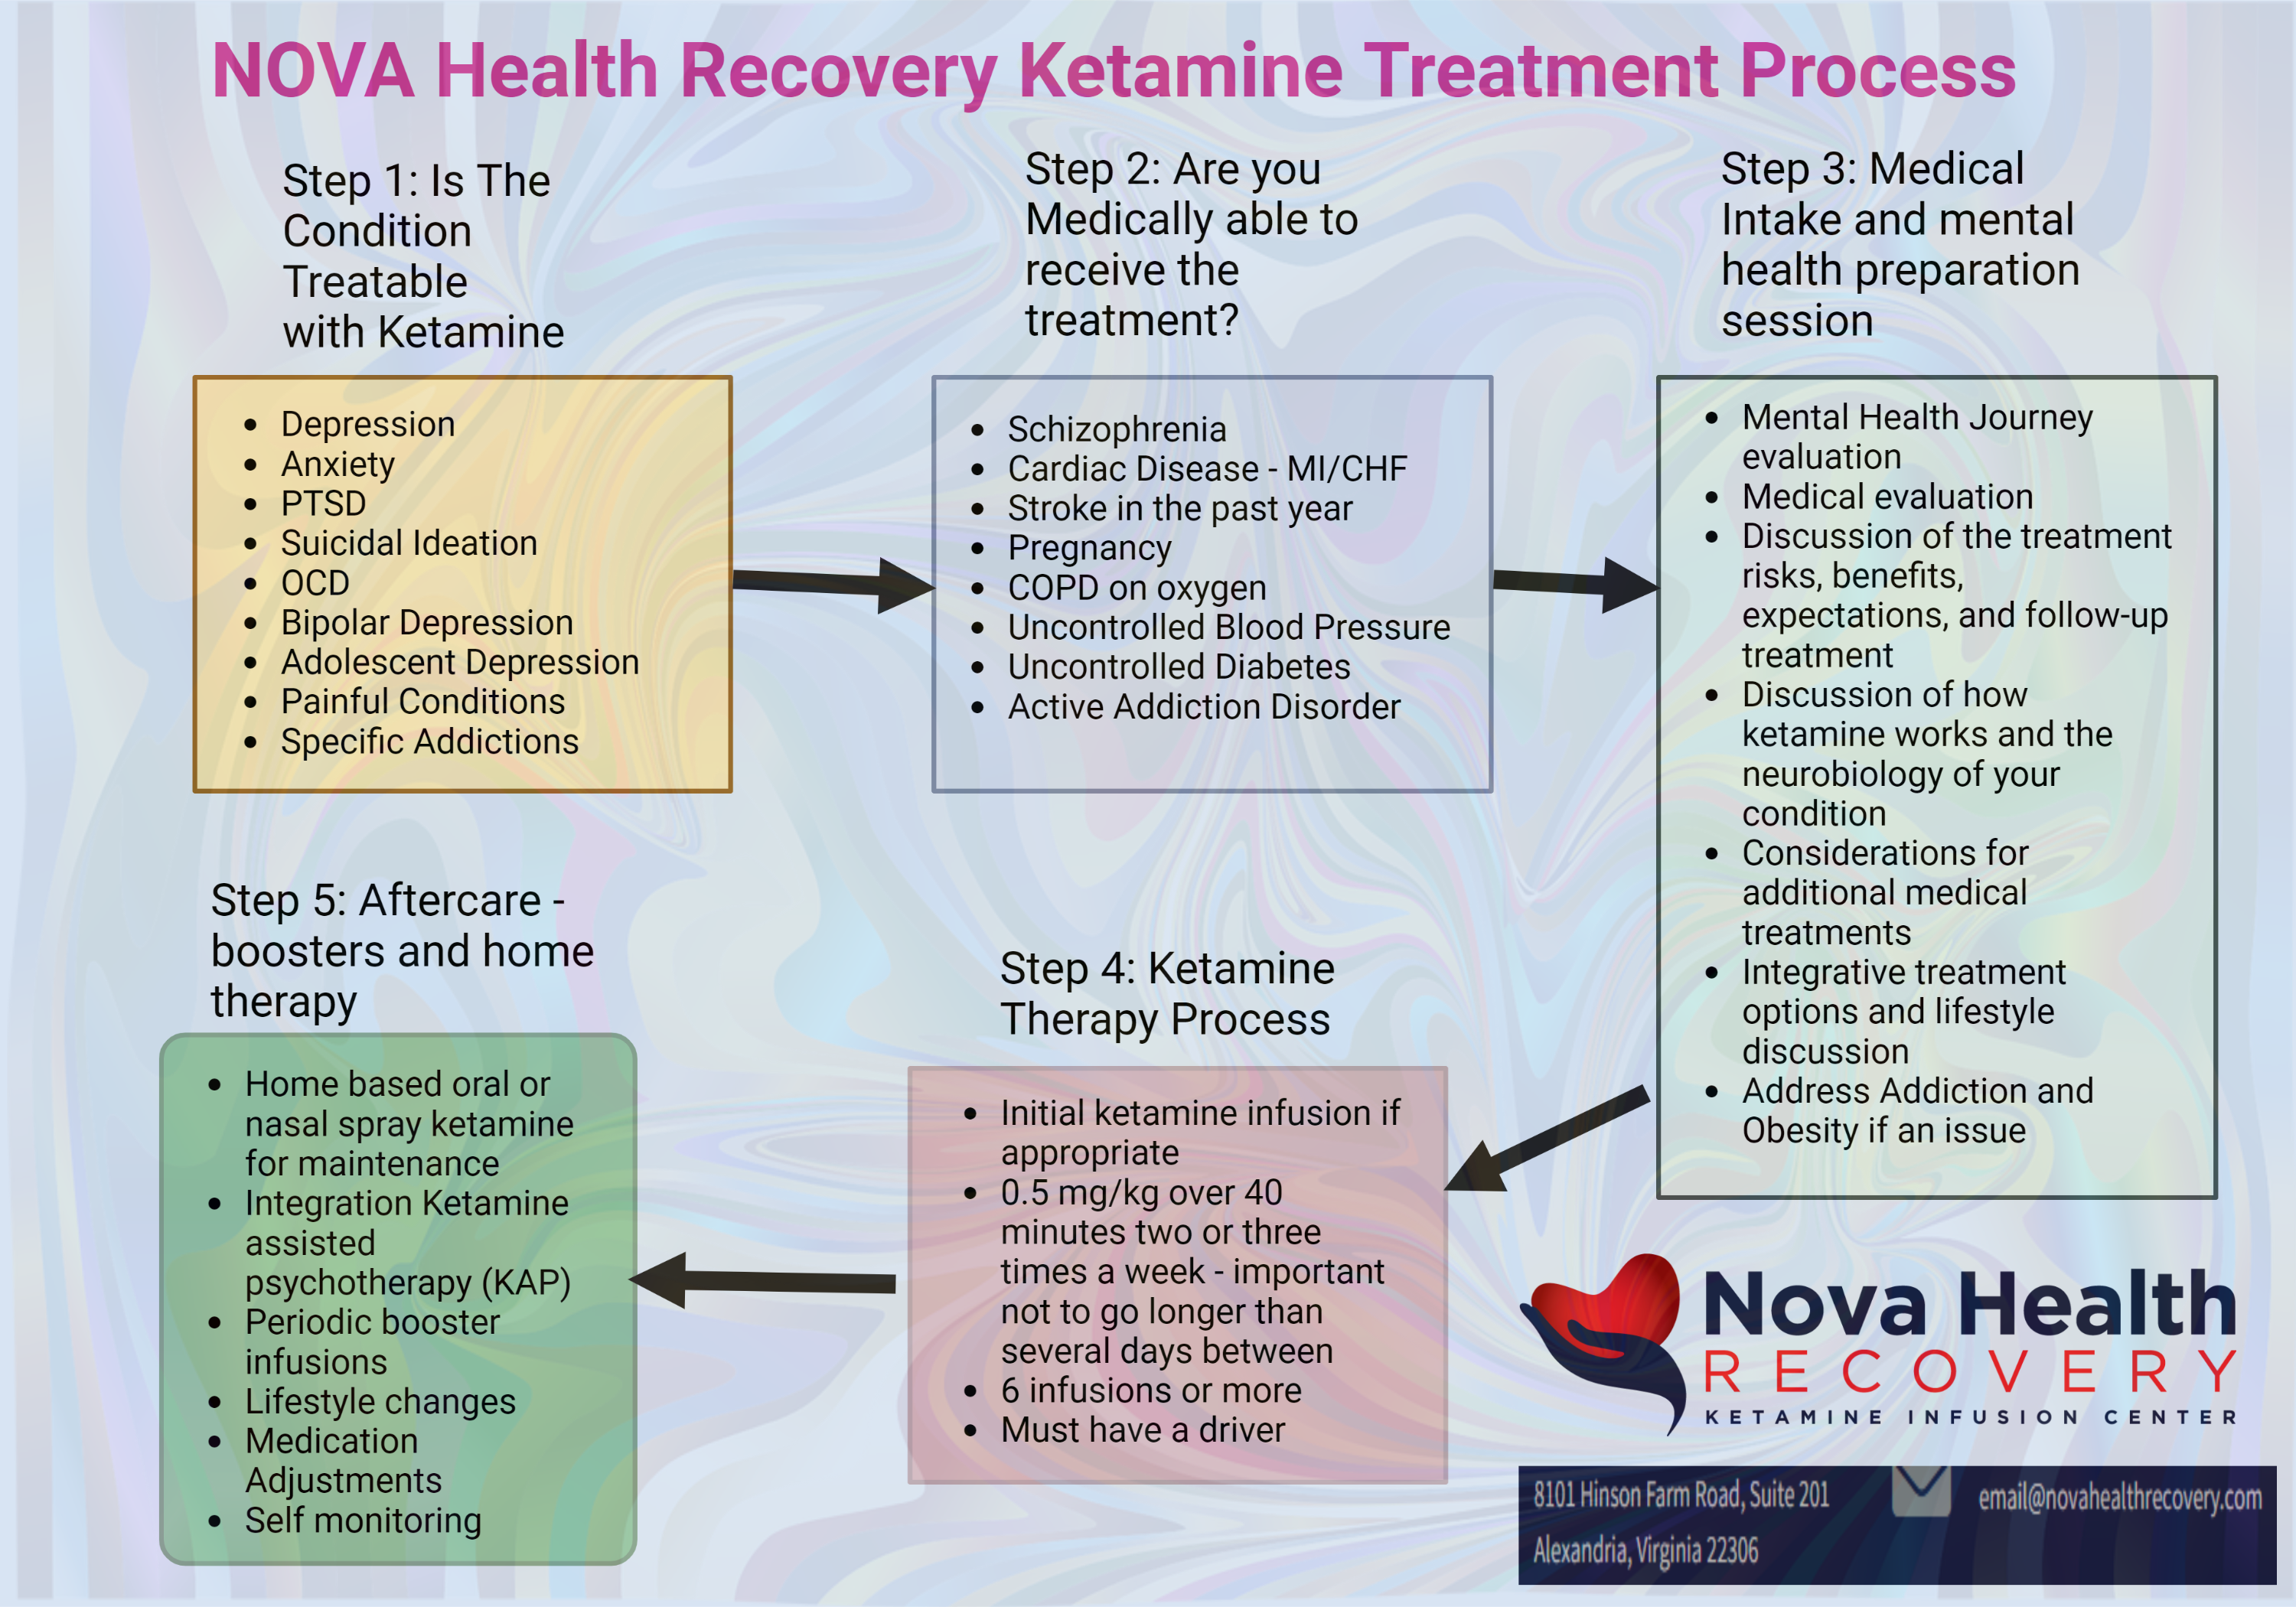 NOVA Health Recovery Ketamine Center - Alexandria, Virginia